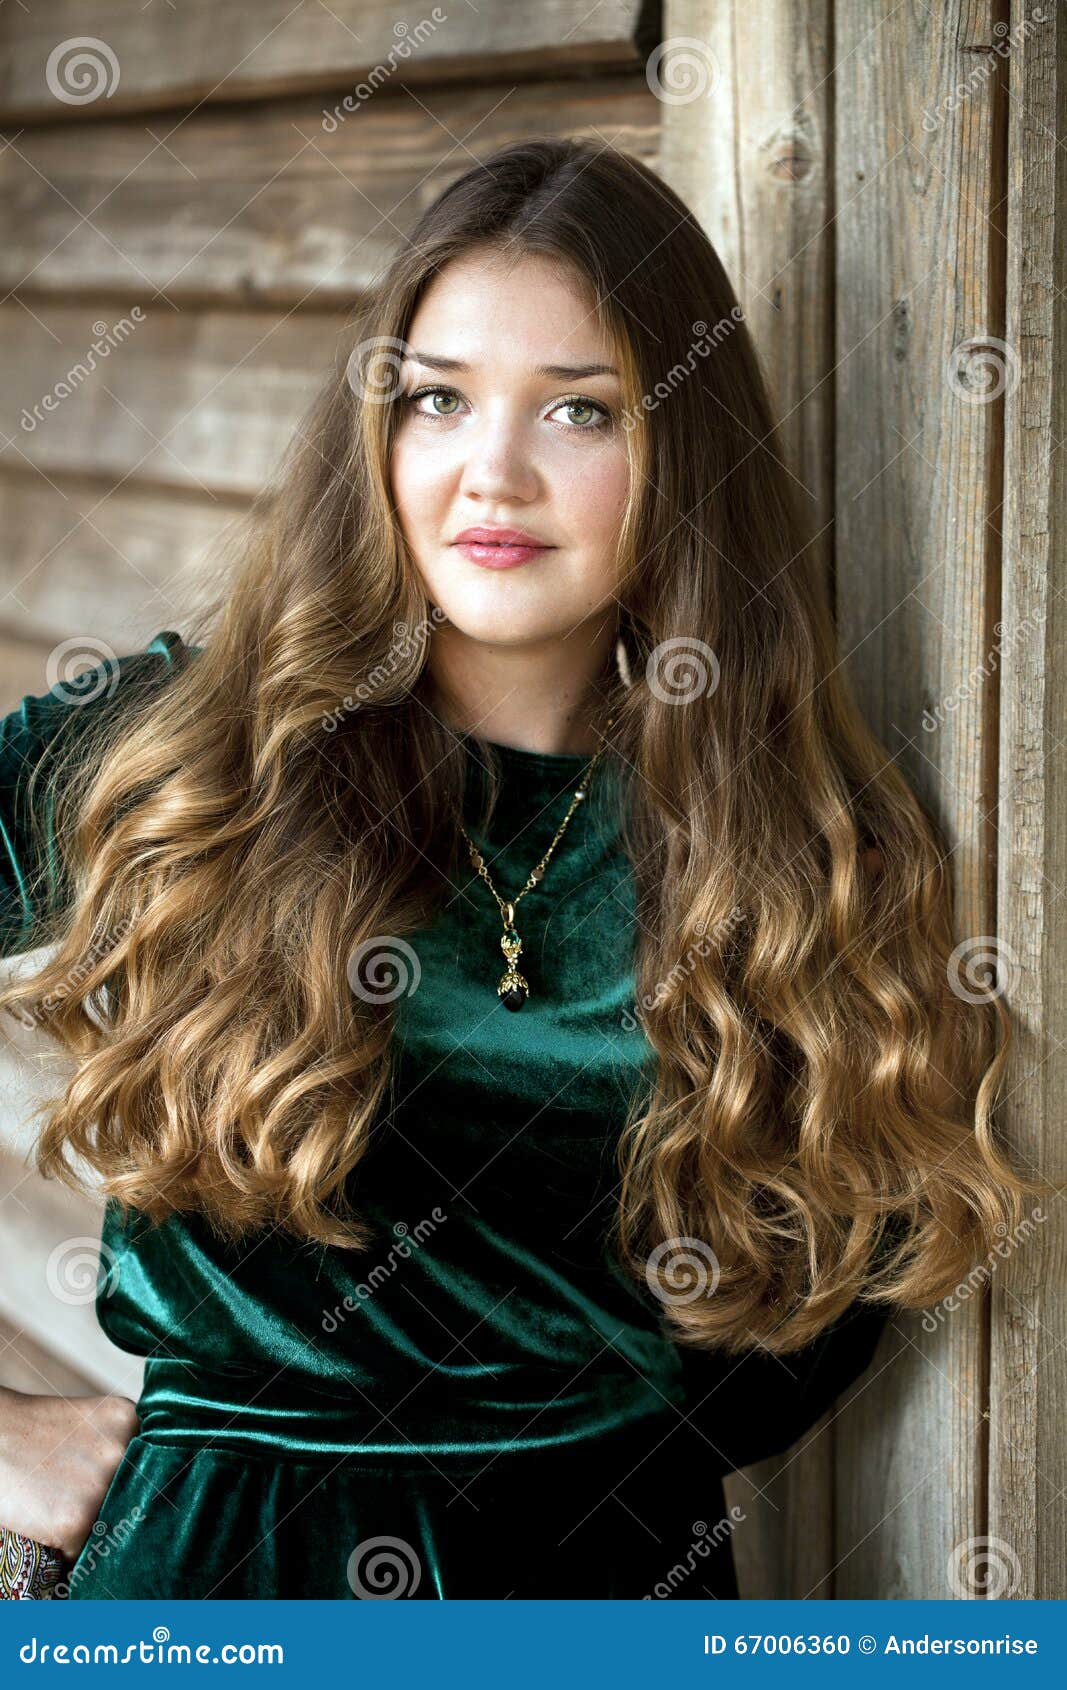 https://thumbs.dreamstime.com/z/russian-beauty-woman-green-dress-67006360.jpg